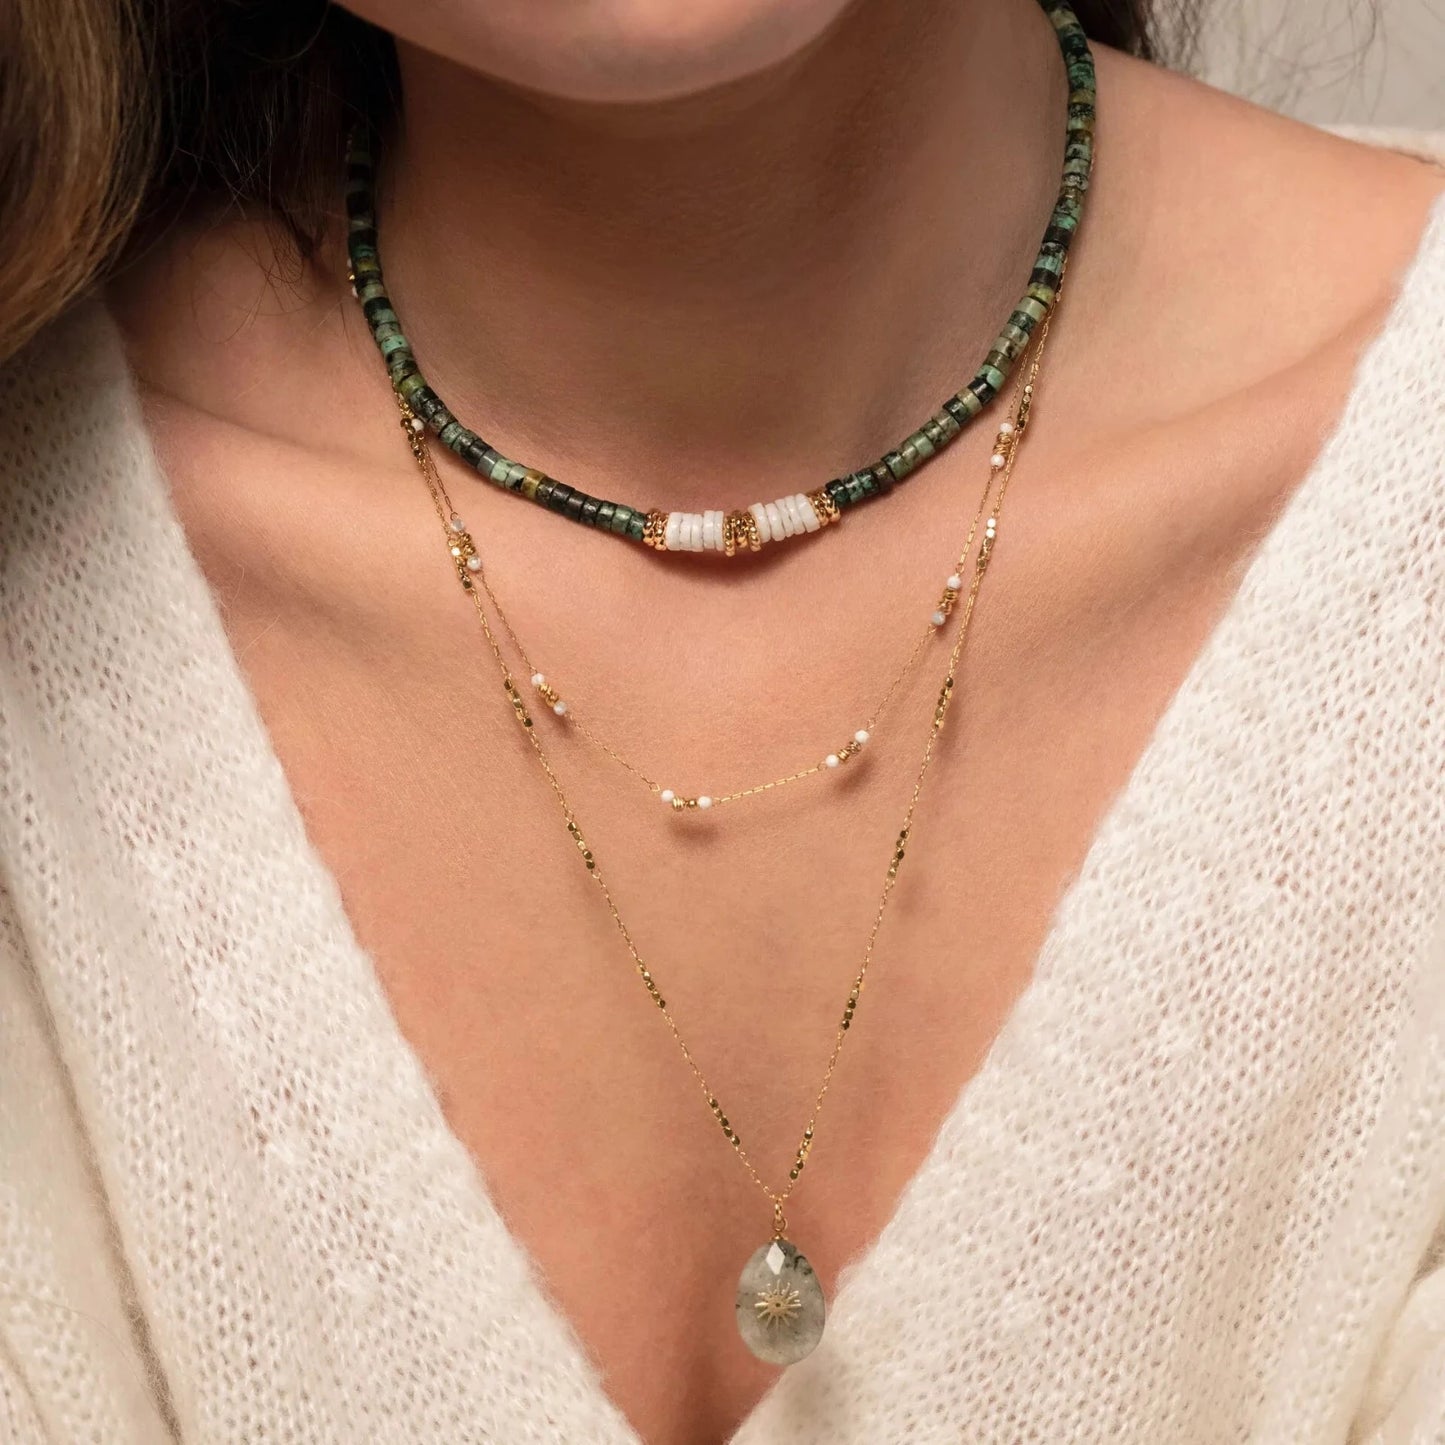 buste de femme portant trois colliers en perles et chaine or en accumulation